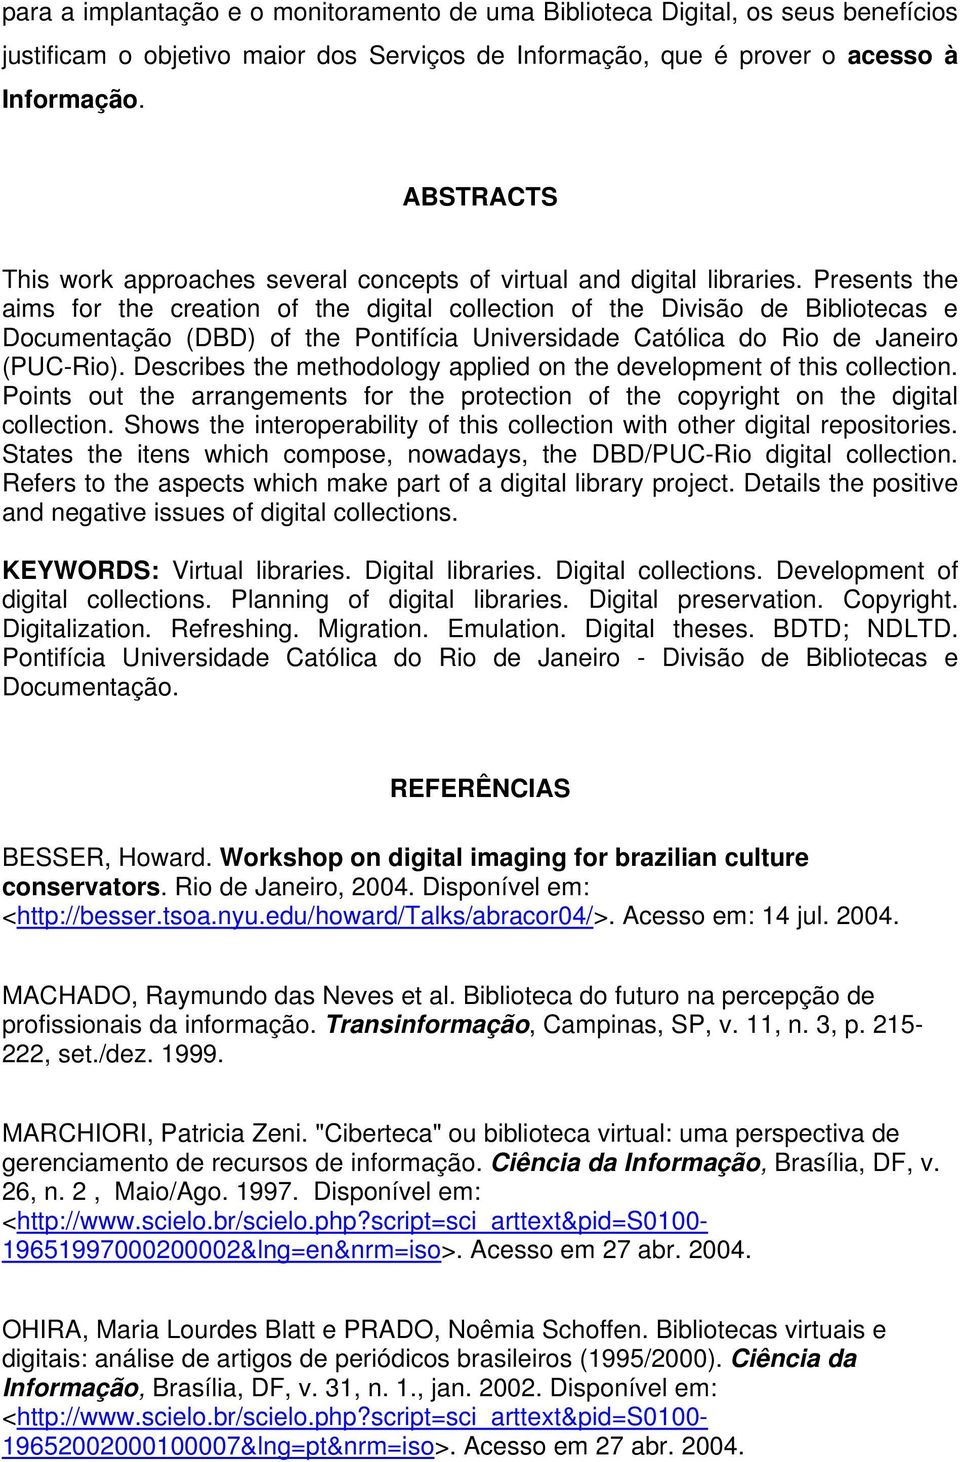 Presents the aims for the creation of the digital collection of the Divisão de Bibliotecas e Documentação (DBD) of the Pontifícia Universidade Católica do Rio de Janeiro (PUC-Rio).